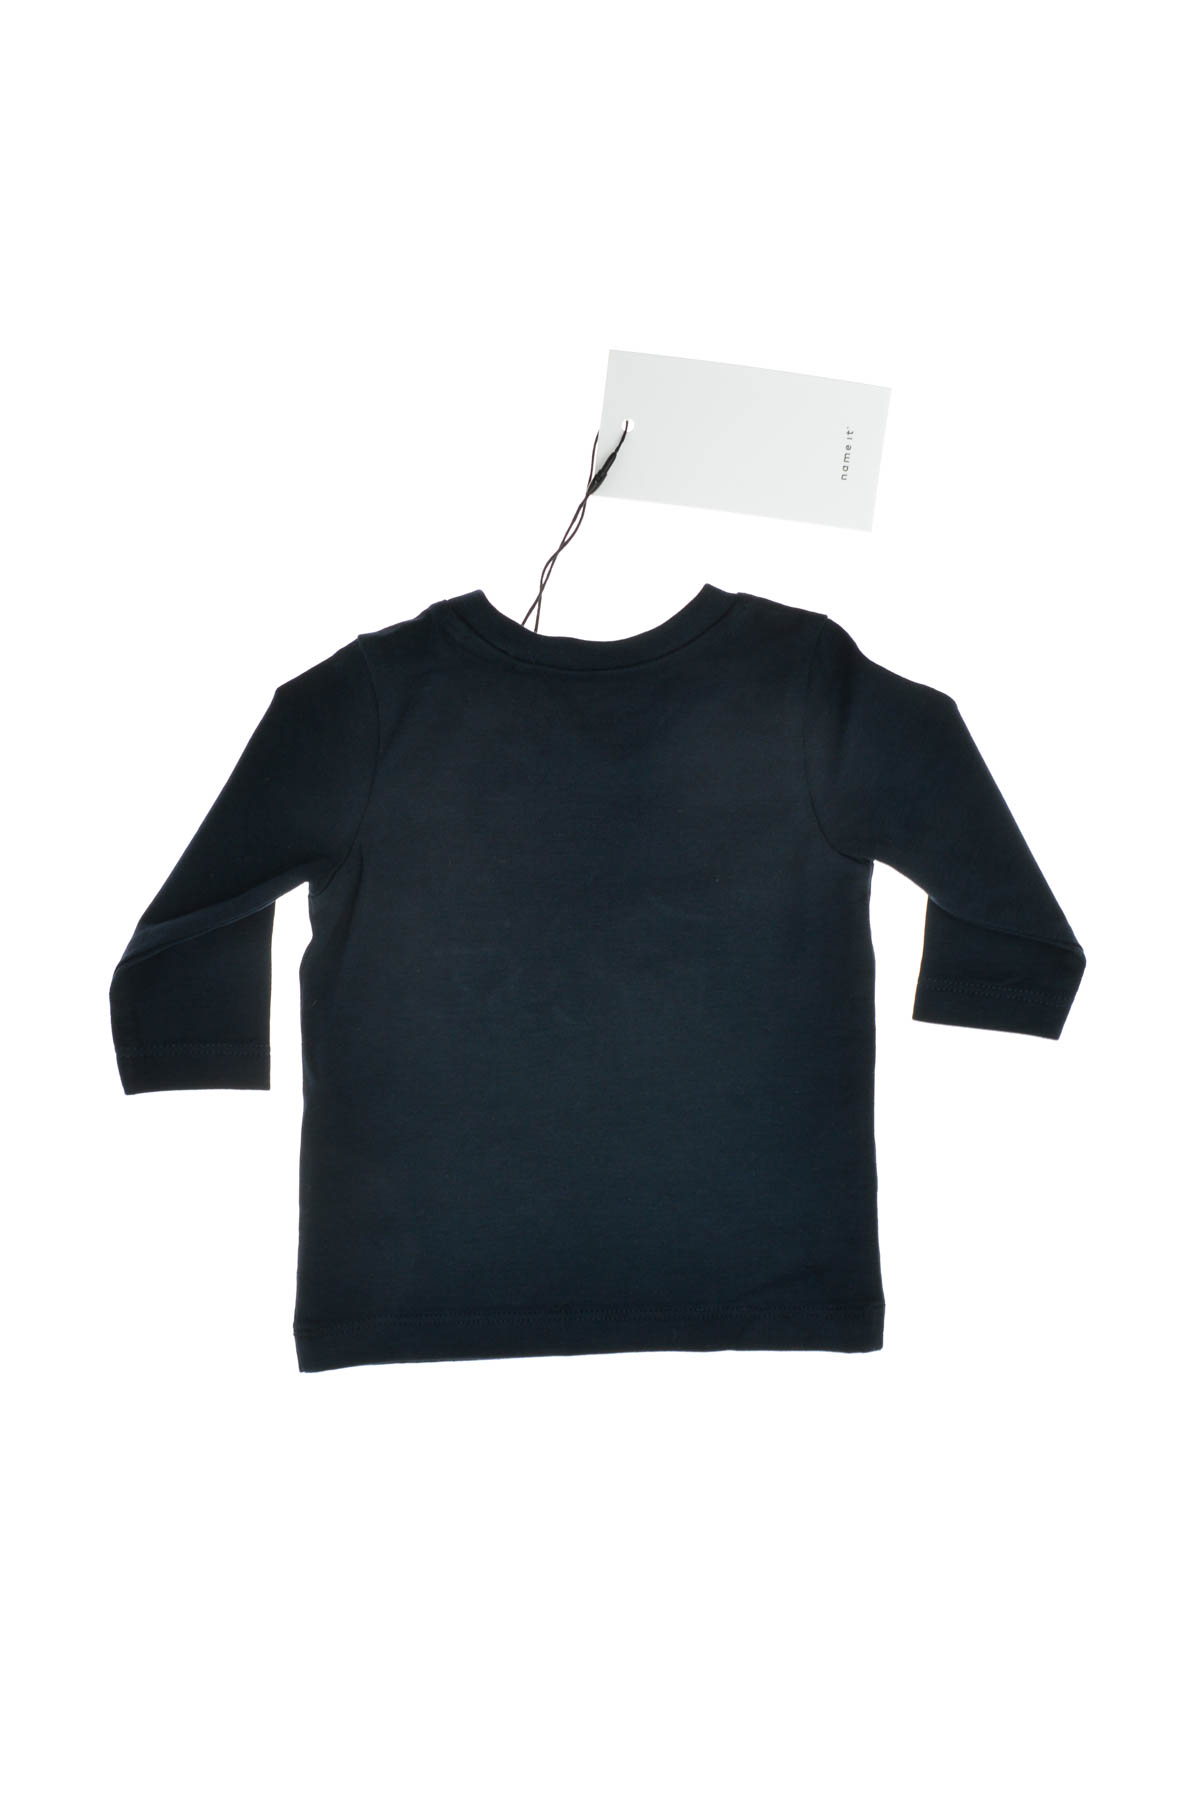 Βρεφική μπλούζα για αγόρι - Name It - 1